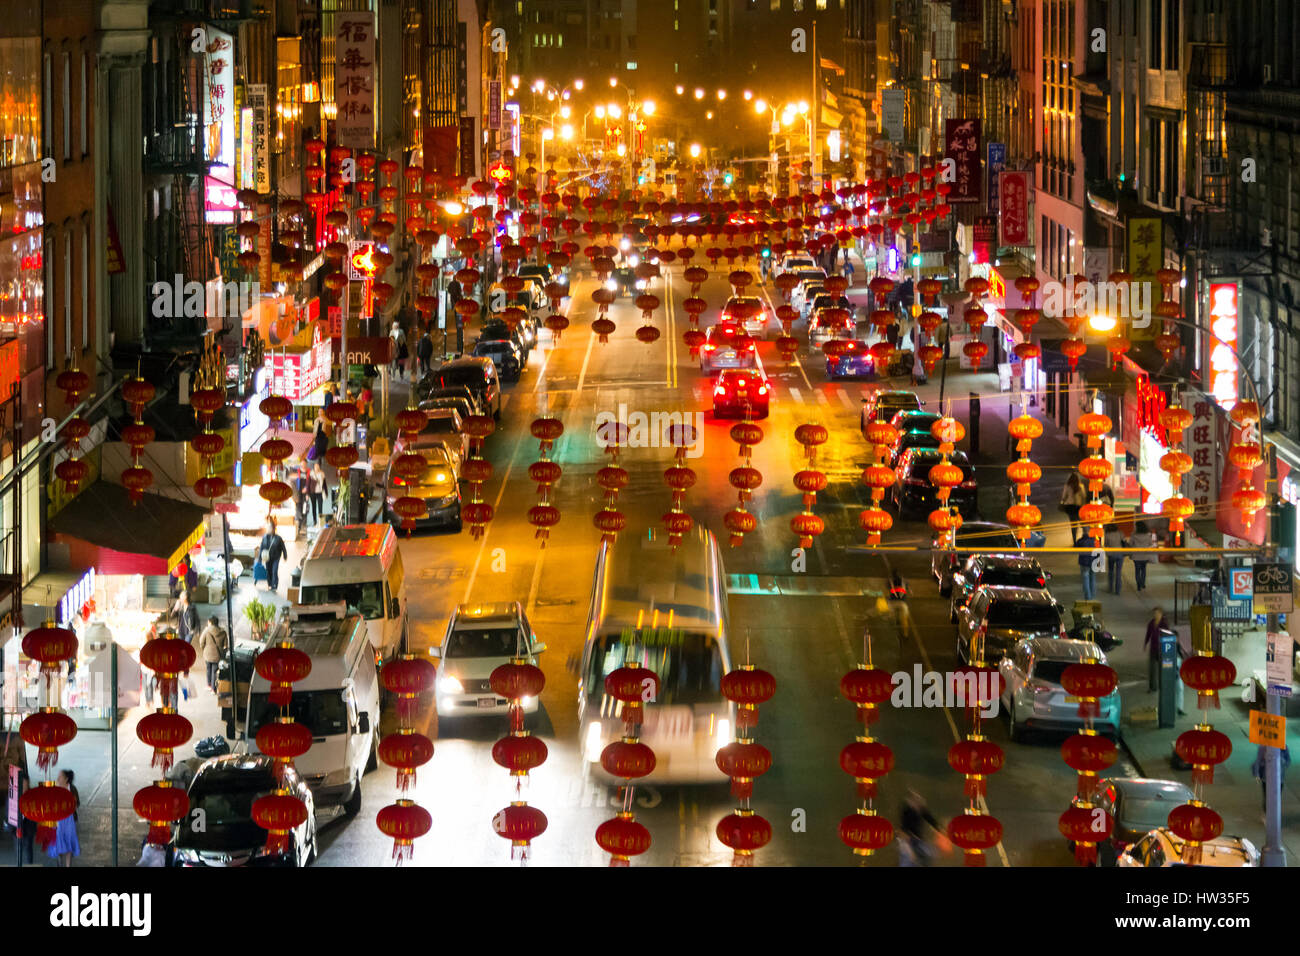 NEW YORK CITY – 24 Februar: Den nächtlichen Straßen von Chinatown Leuchten  mit Menschen, Autos und Geschäfte in Manhattan, New York City am 24.  Februar 201 Stockfotografie - Alamy